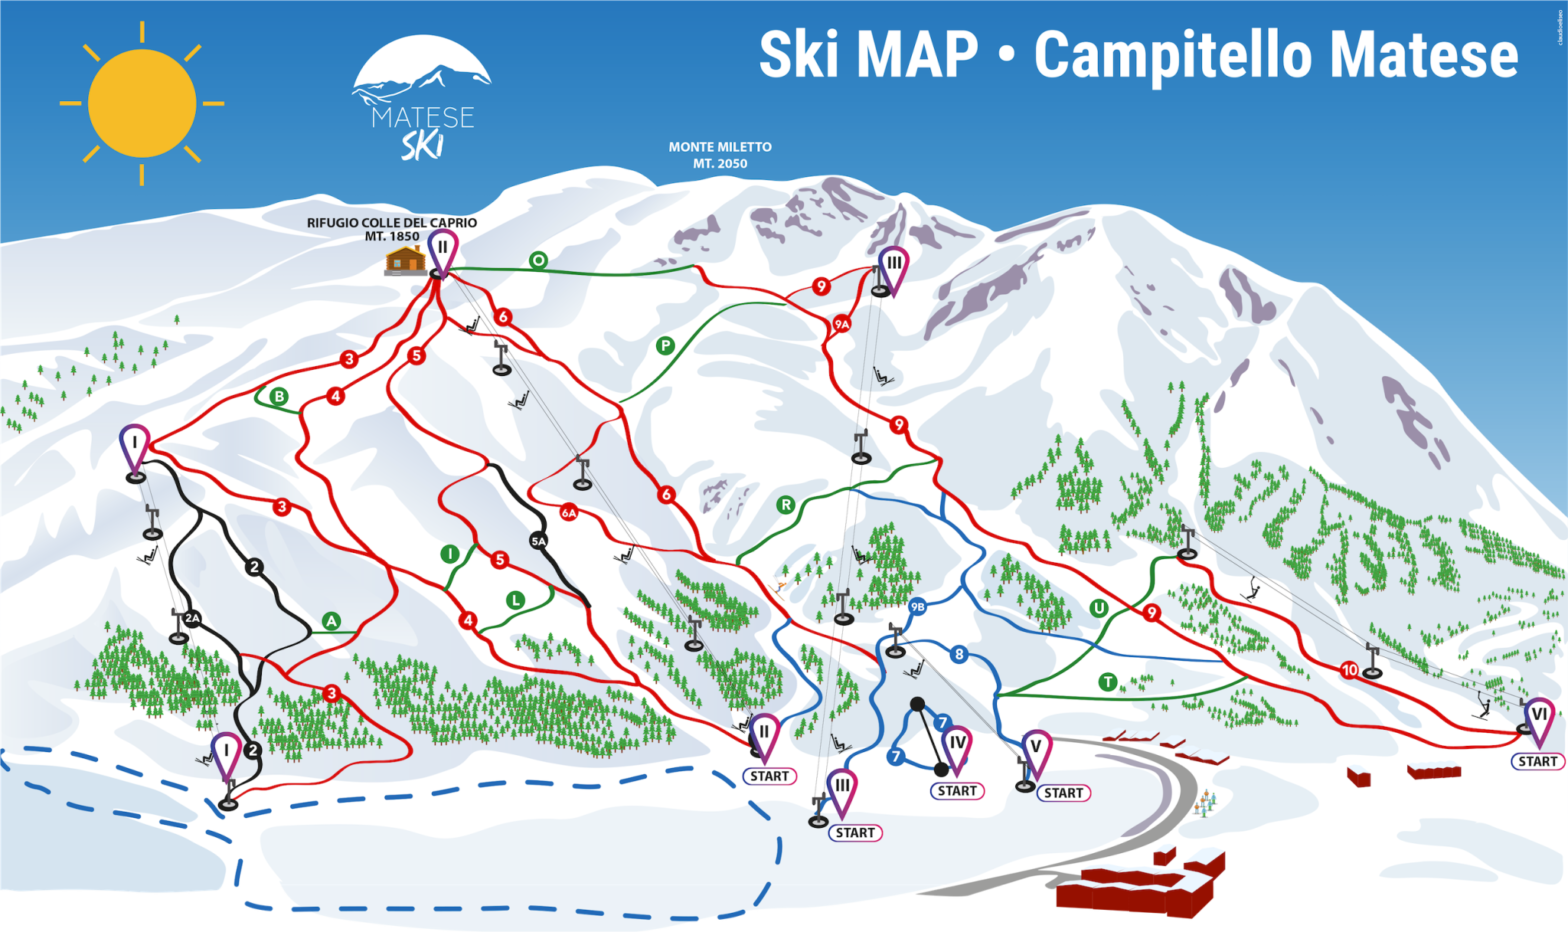 Campitello Matese, situato nella pittoresca regione del Molise, è una destinazione ideale per gli appassionati di sci del Sud Italia.